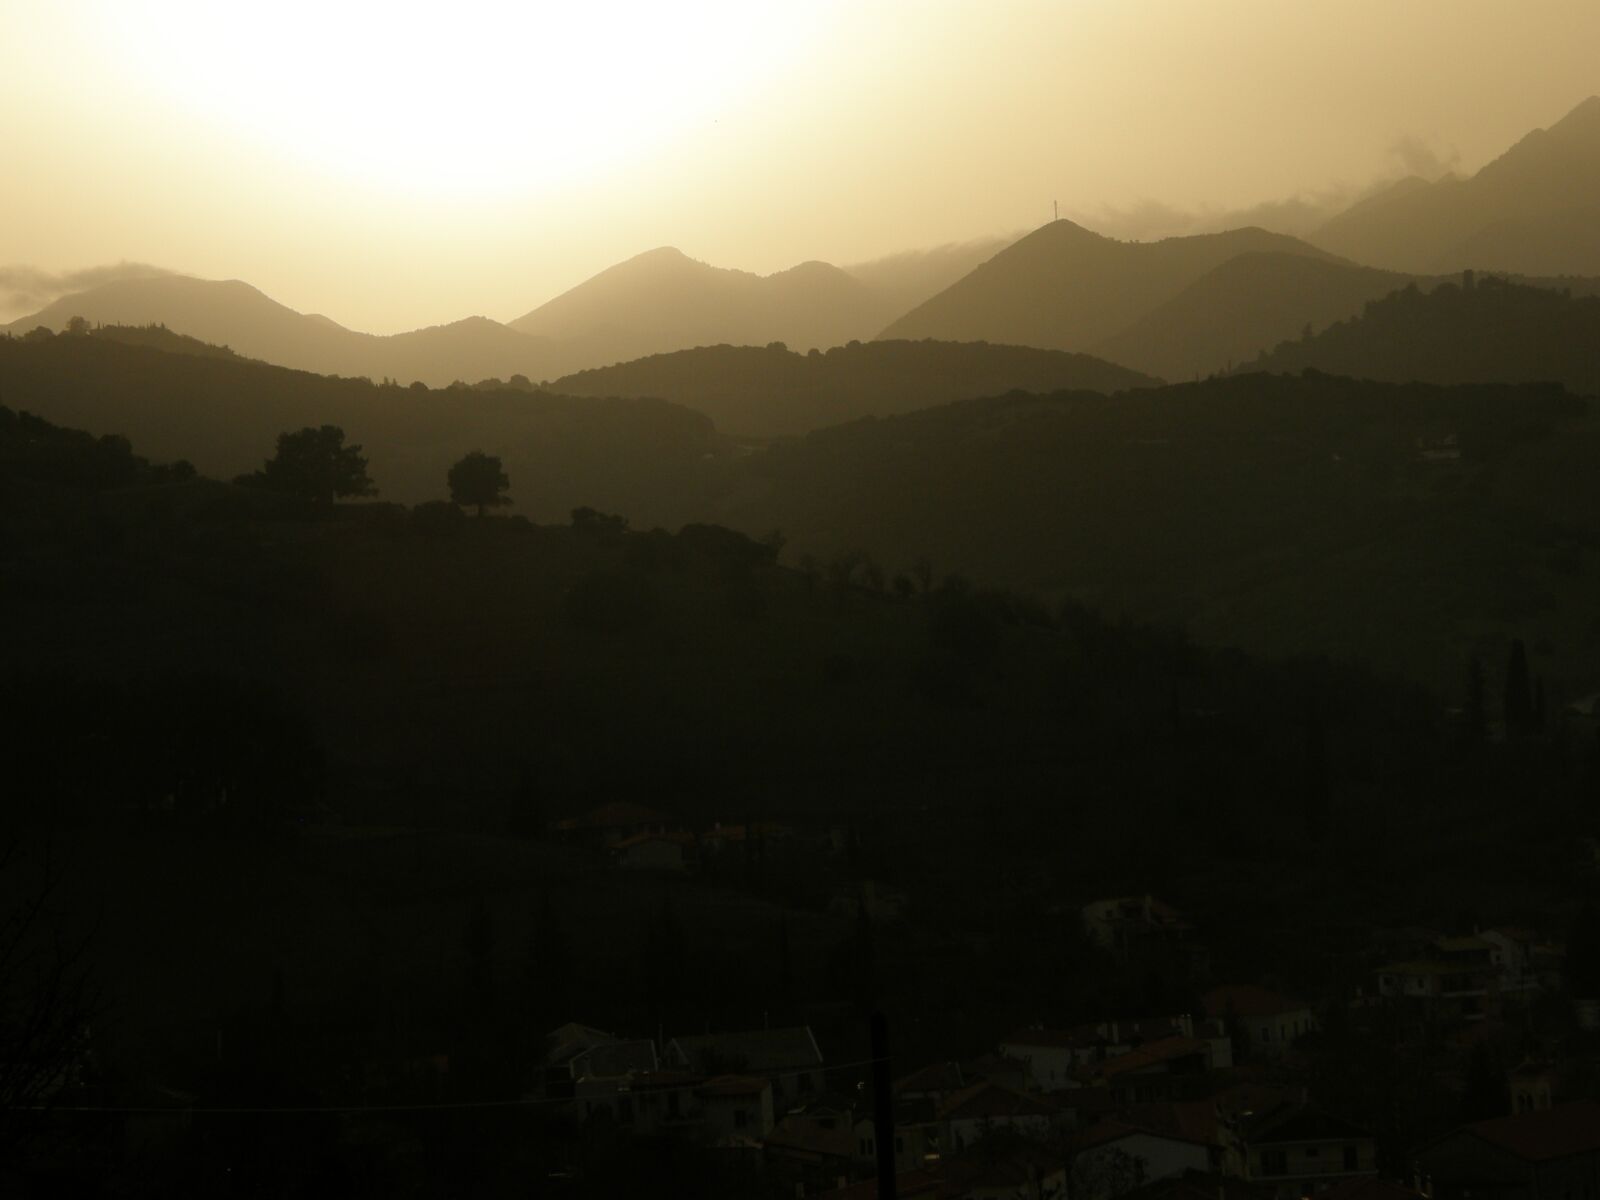 Olympus SP560UZ sample photo. Mountains, landscape, sunset photography